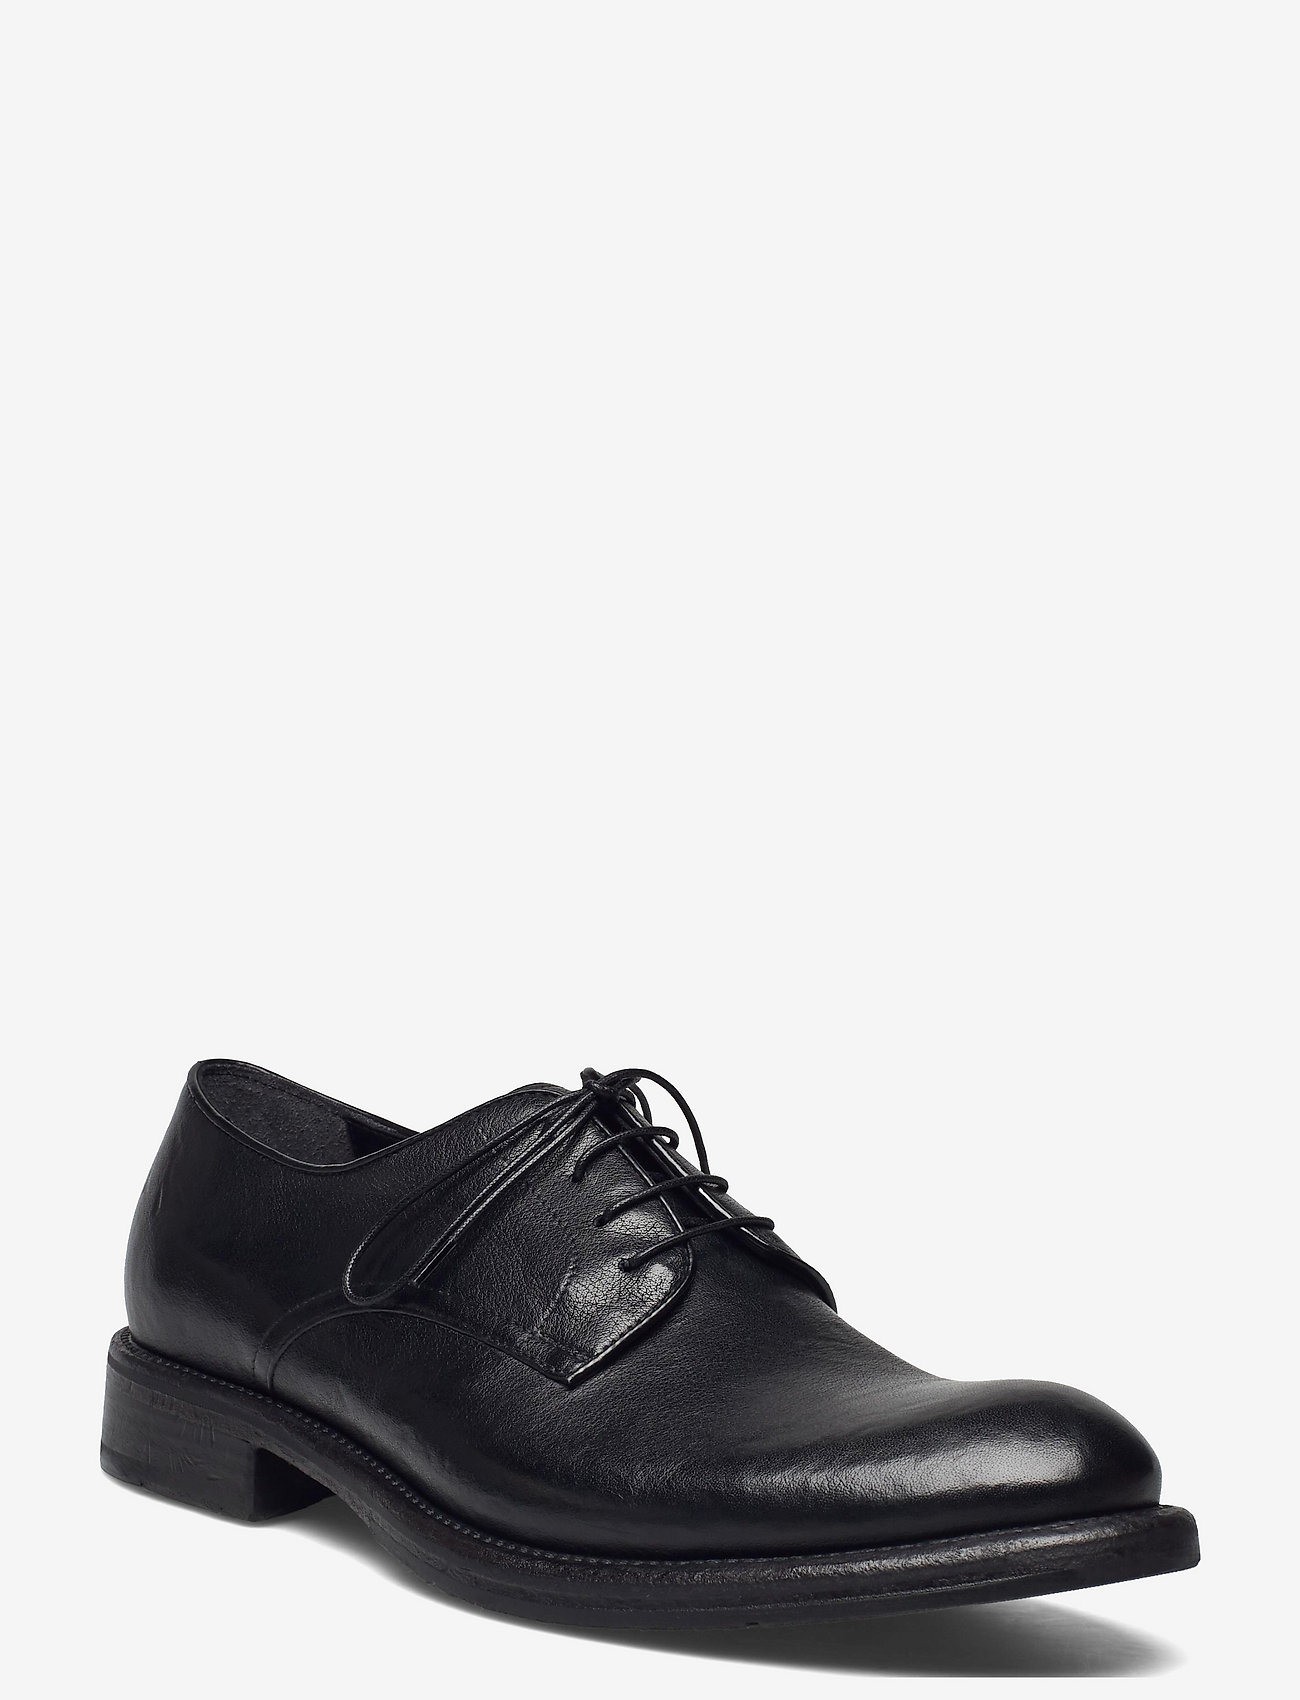 SAND - Footwear MW - F381 - business - black - 0